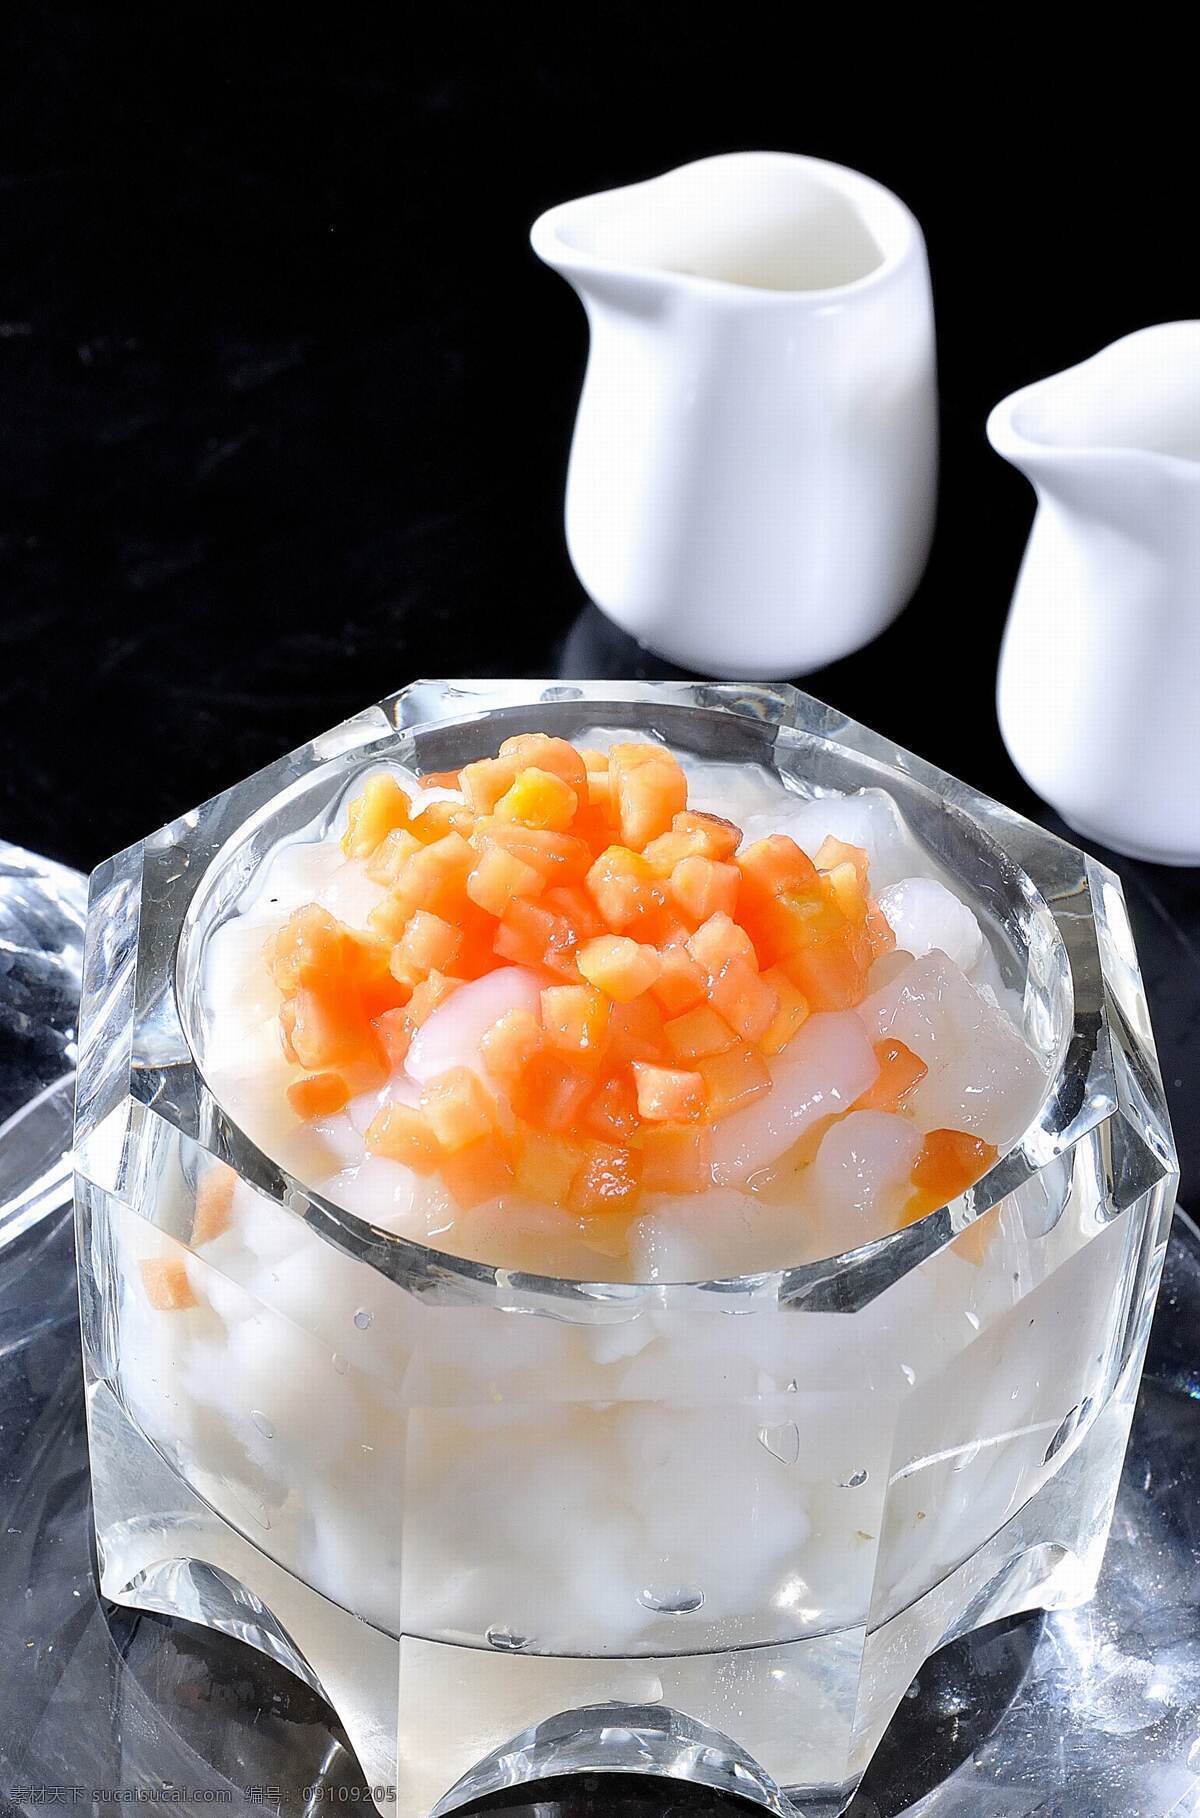 原汁 木瓜 炖 雪 蛤 雪蛤 营养 美味 健康 餐饮美食 传统美食